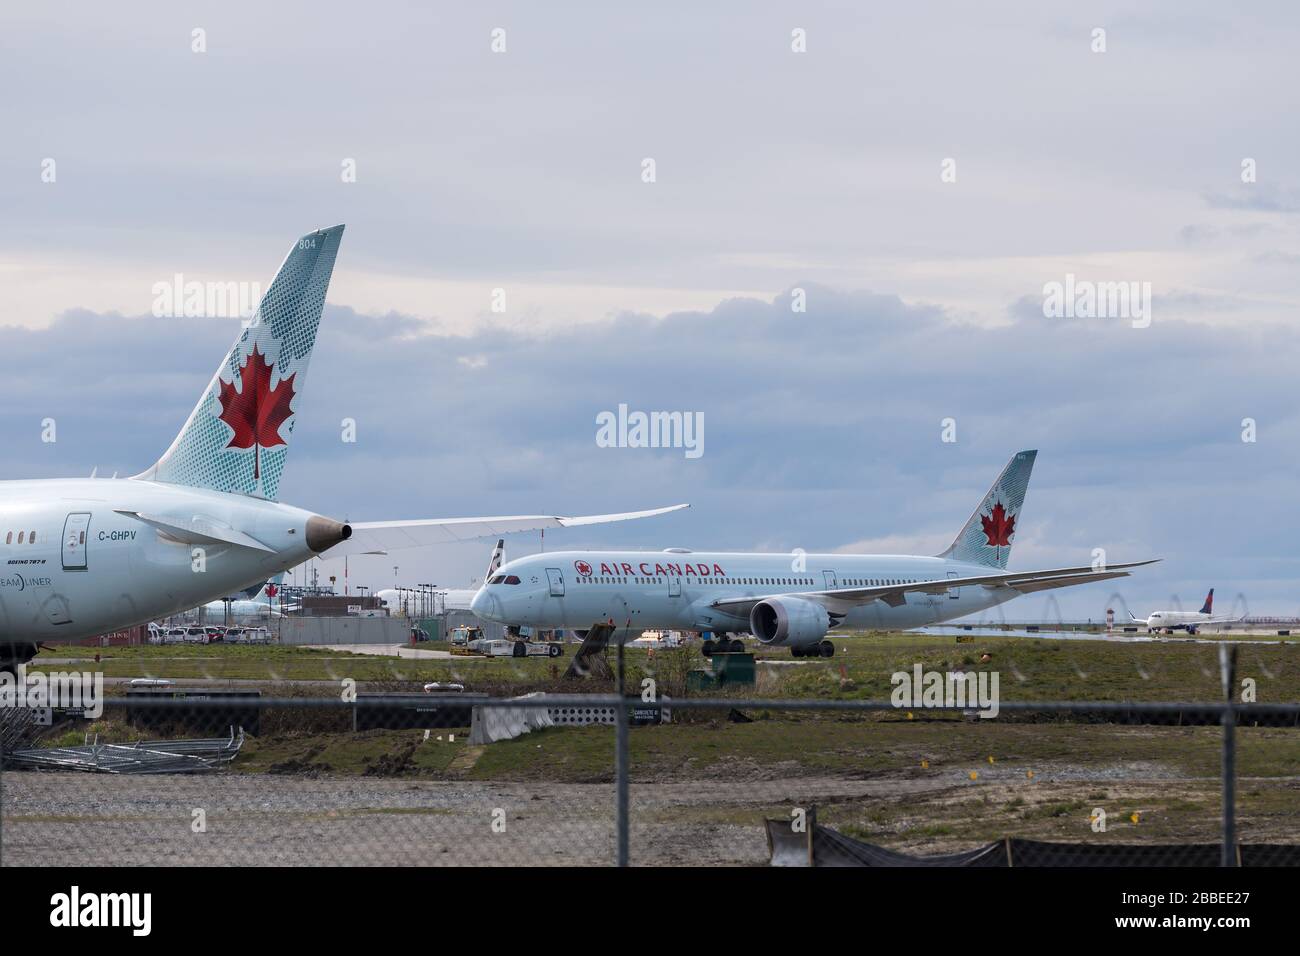 RICHMOND, BC, CANADA - 29 DE MARZO de 2020: Air Canada 787 Dreamliner estacionado en el asfalto con otros aviones en el fondo durante una reducción global en Foto de stock